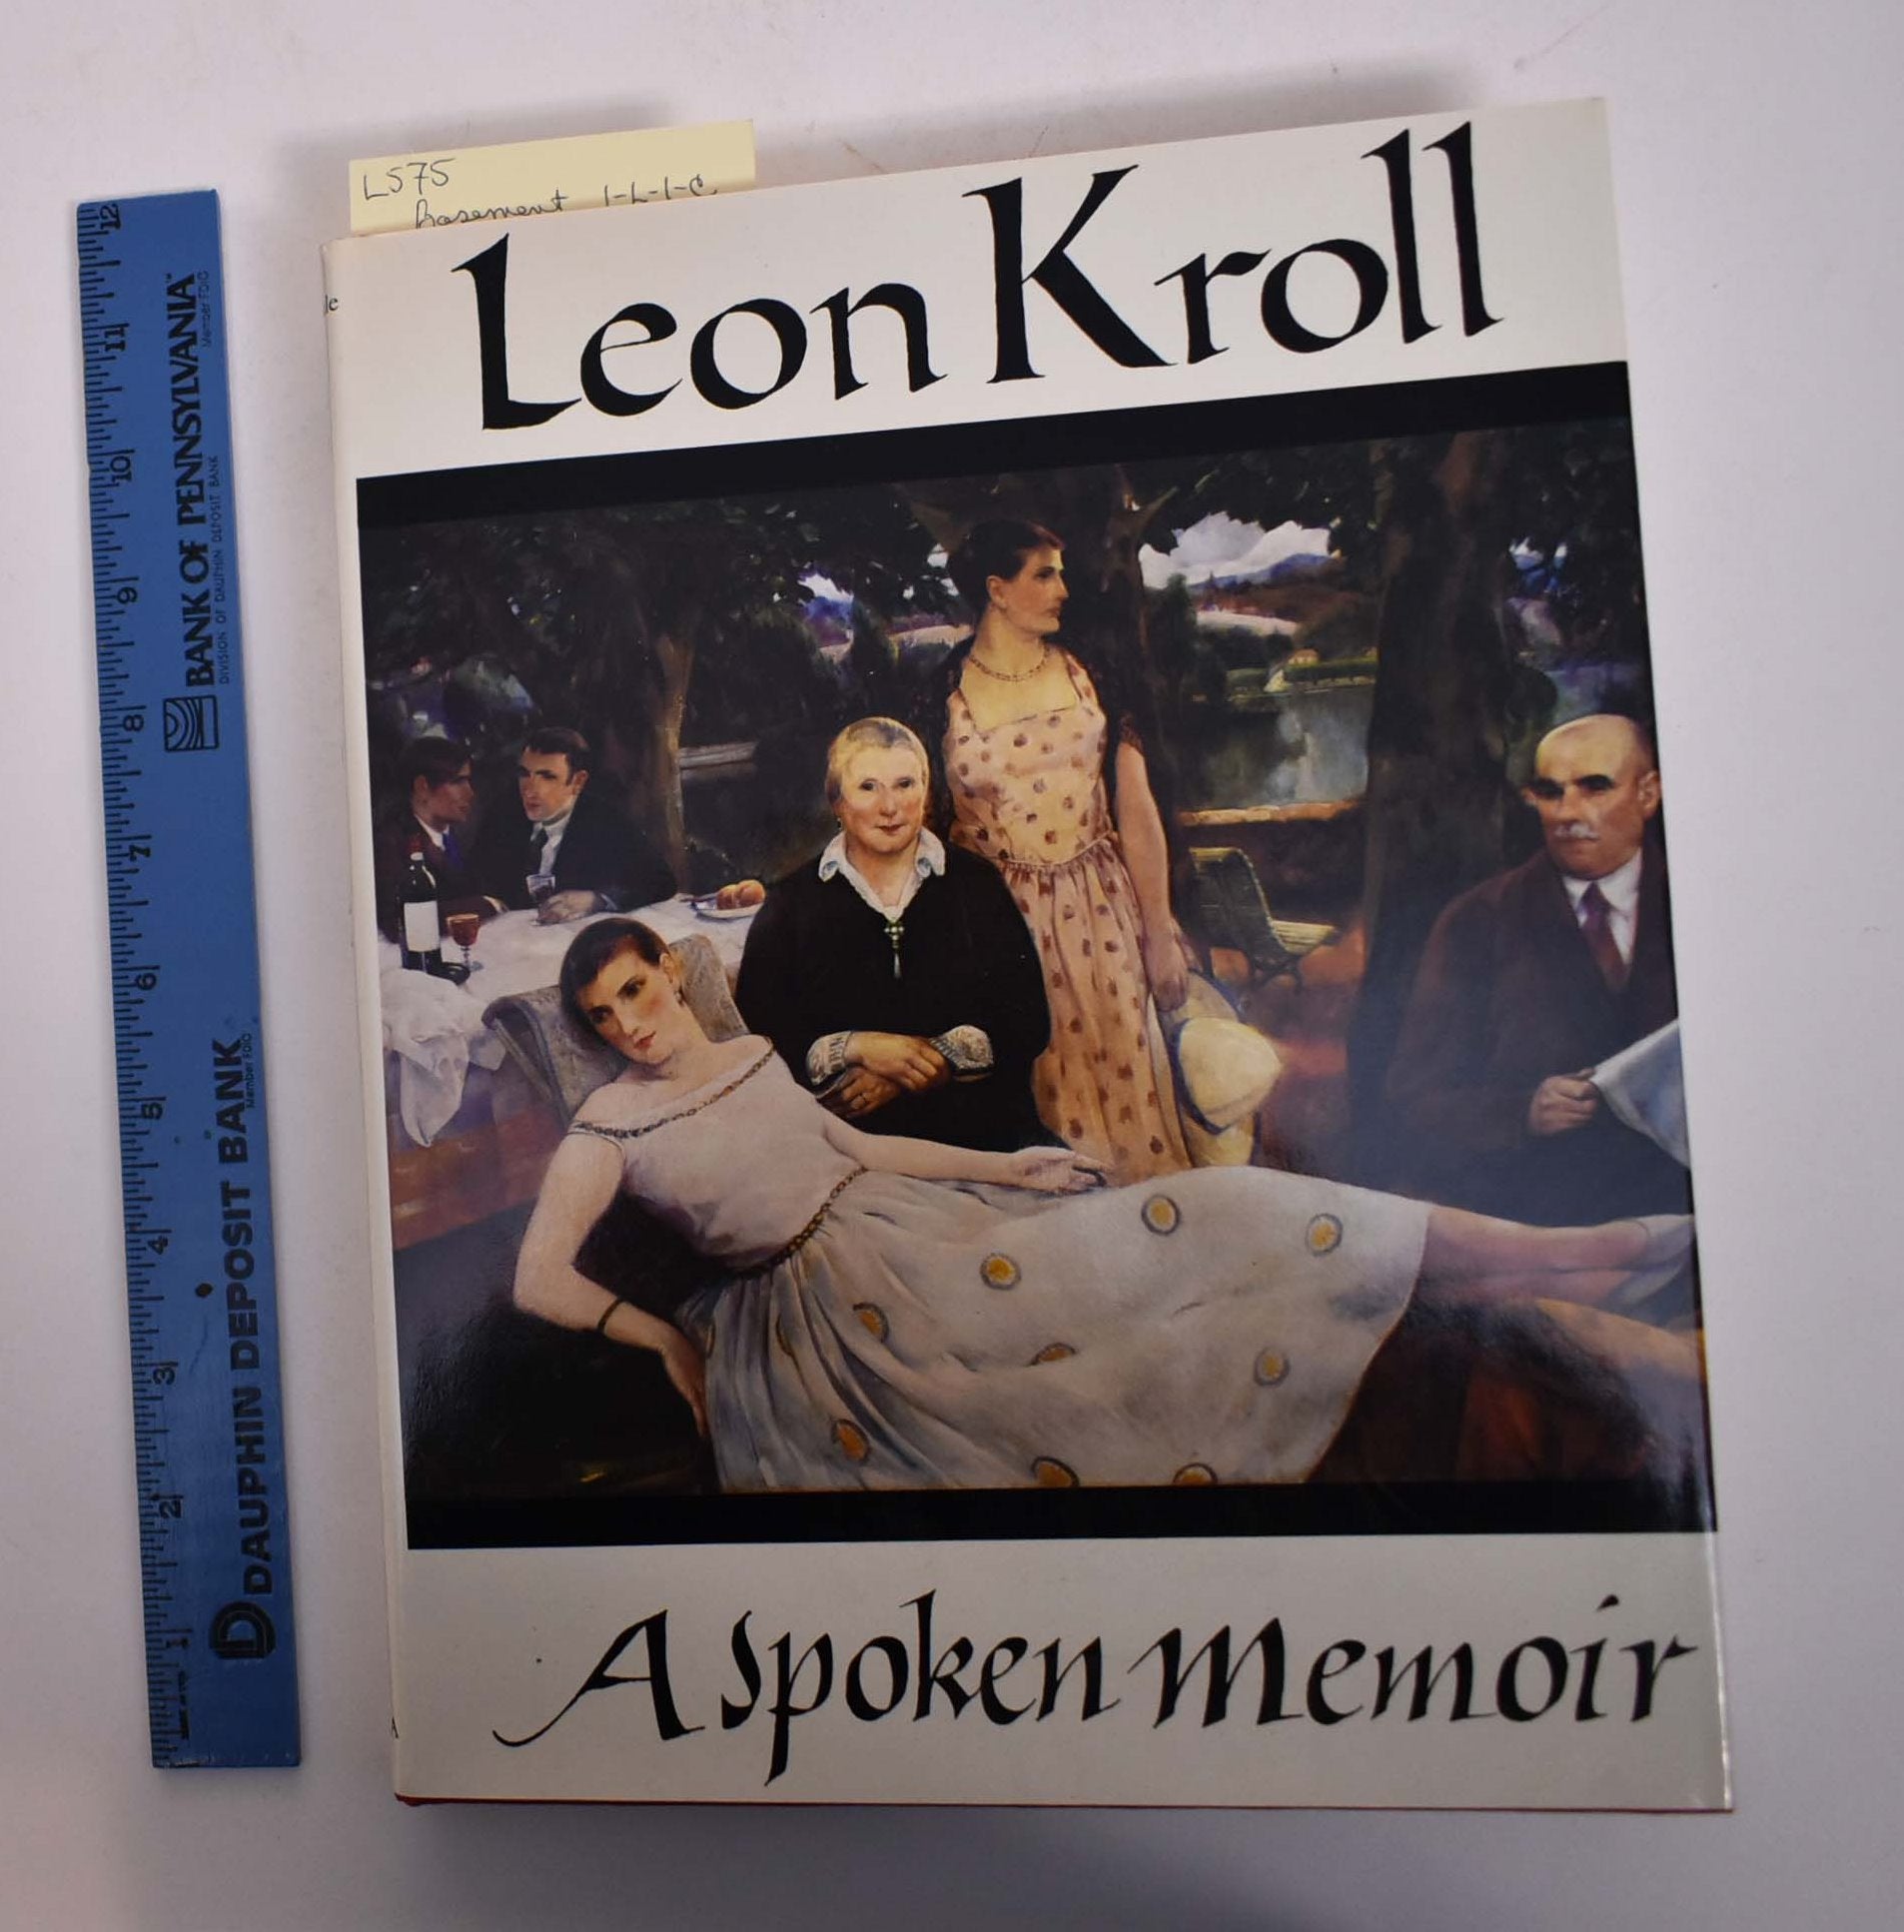 Bowers, Fredson and Nancy Hale (Editors) - Leon Kroll: A Spoken Memoir